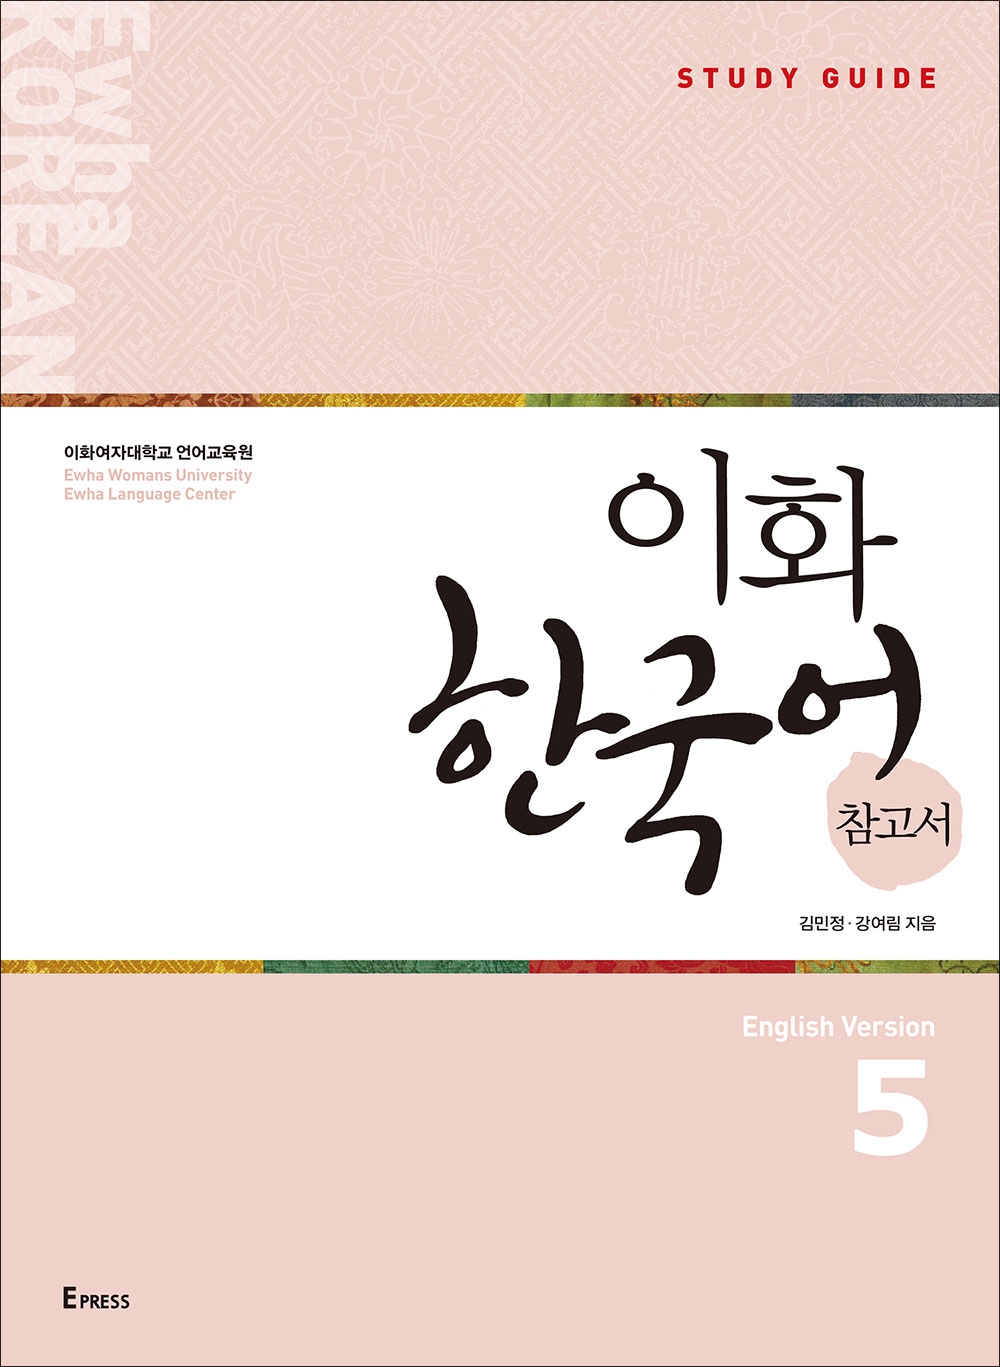 Ewha Korean Study Guide 5 (English)  도서이미지